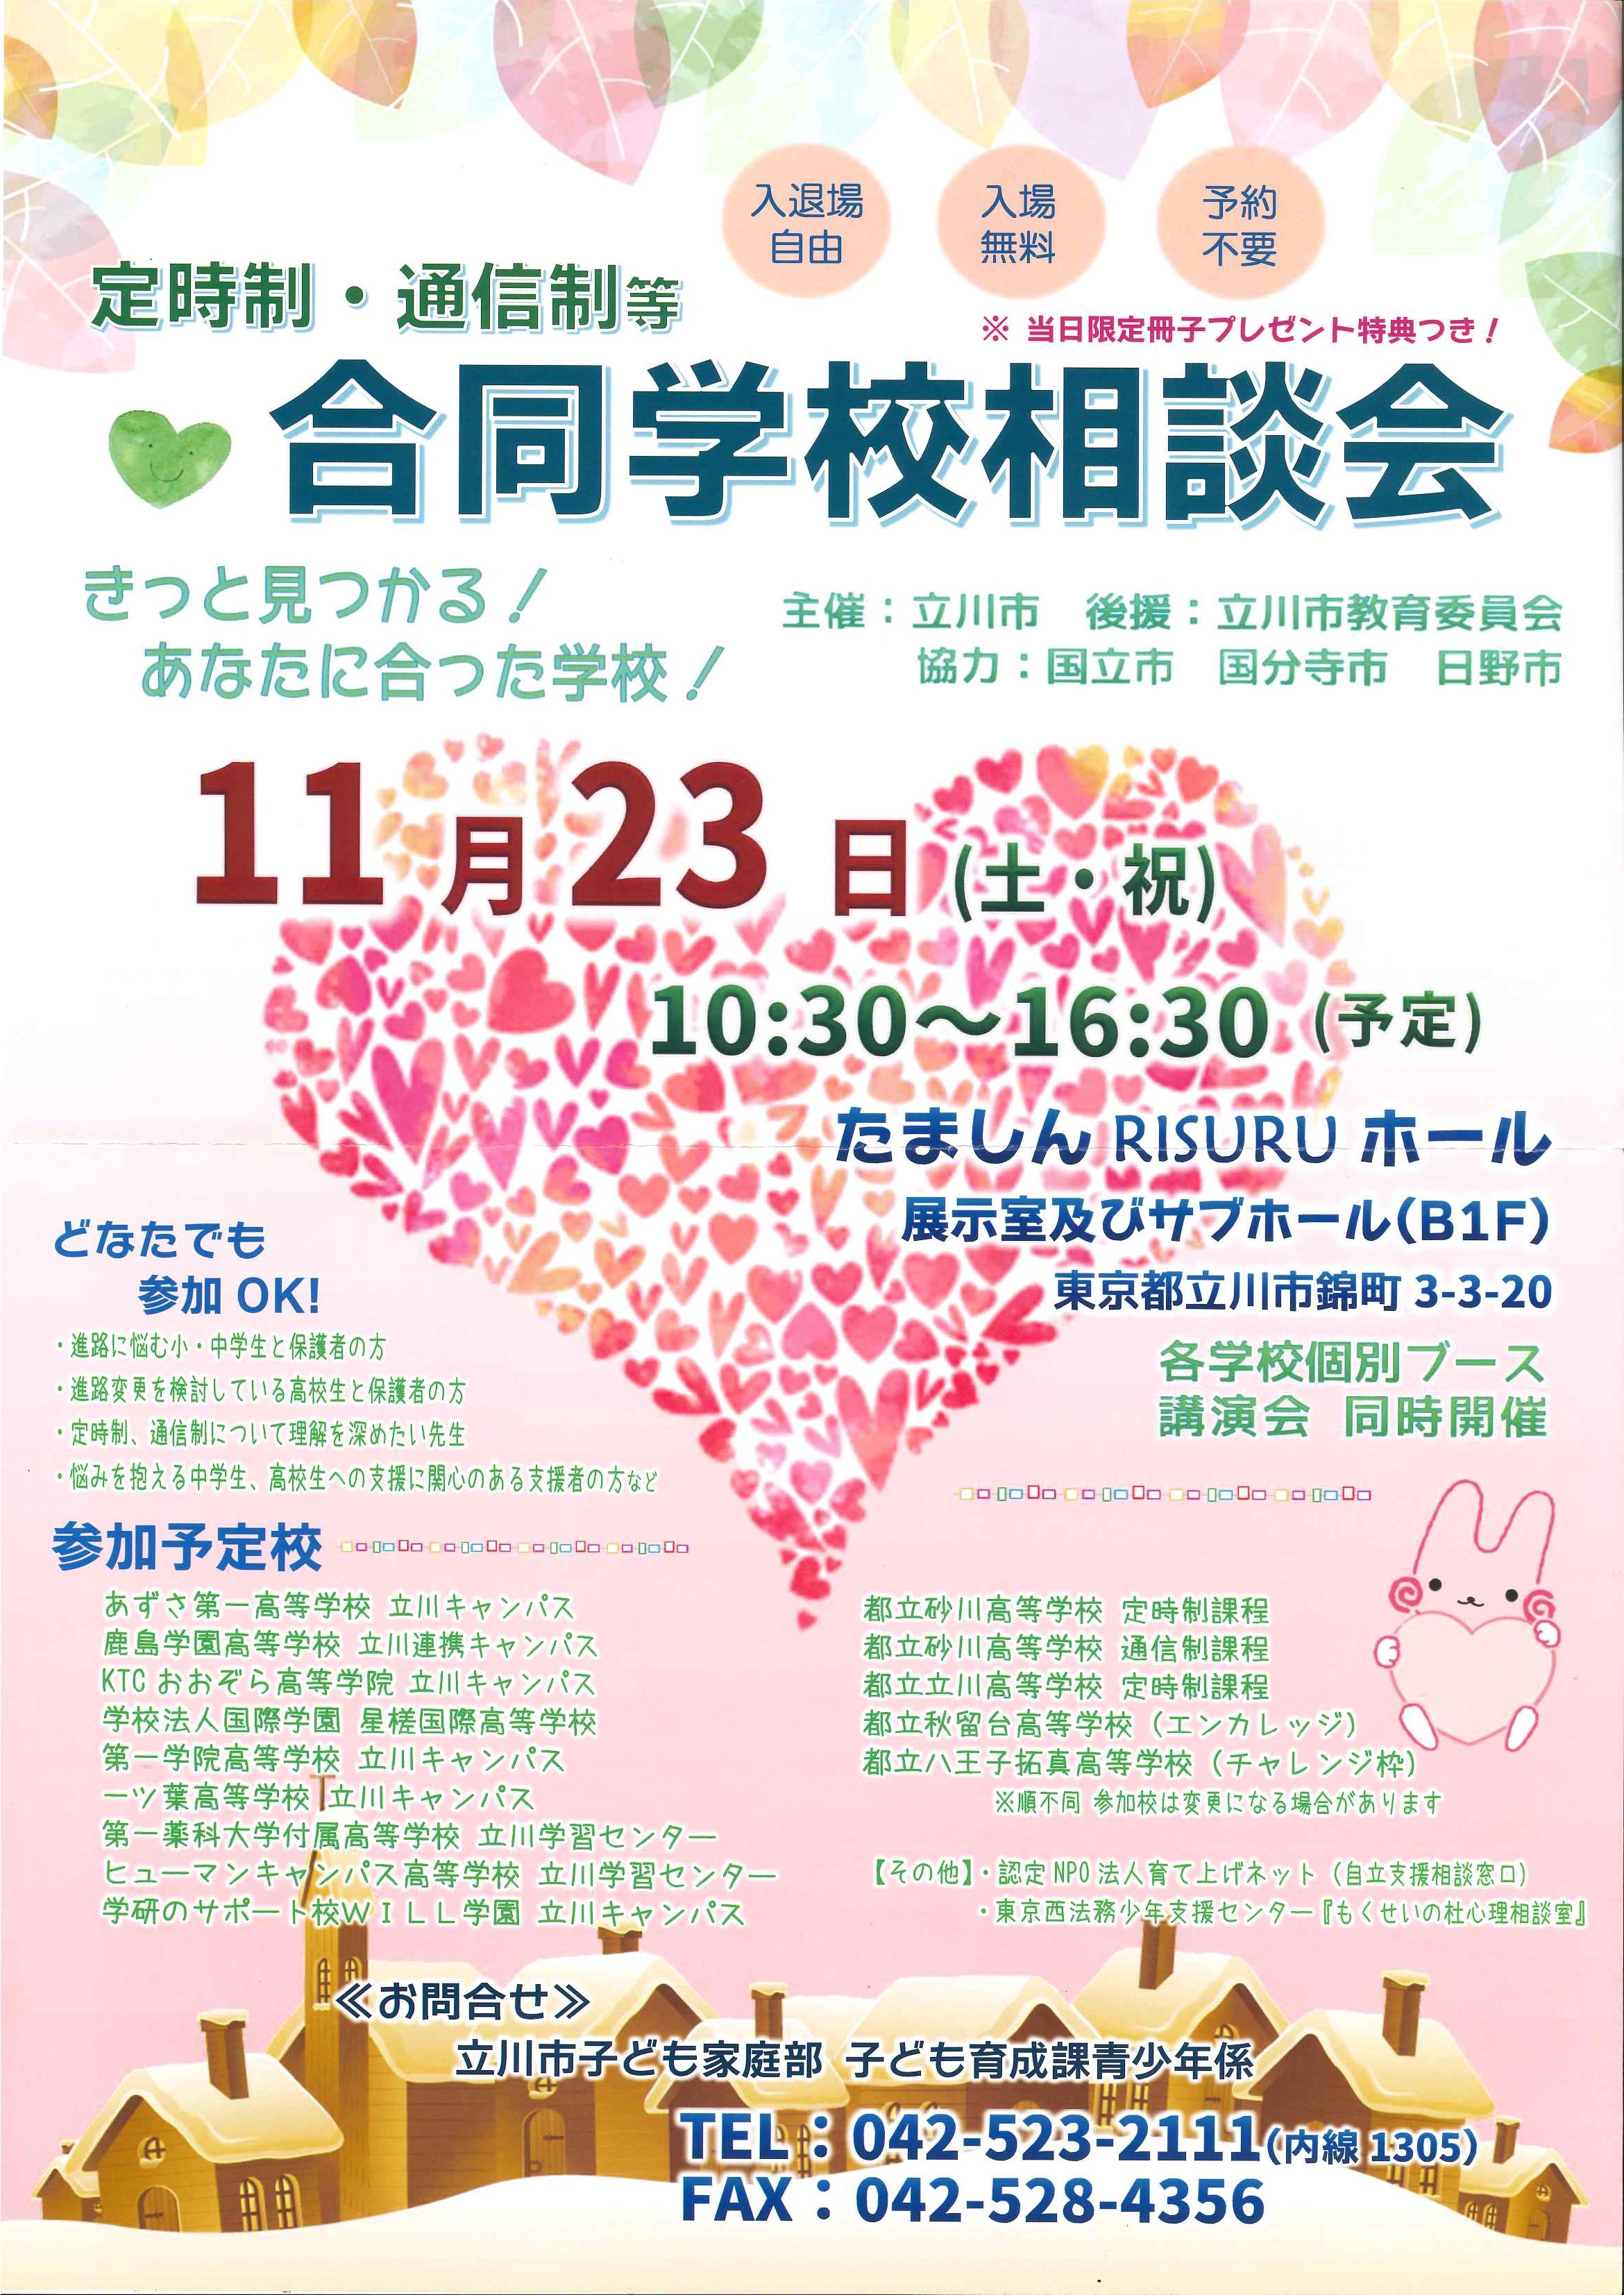 【立川】明日は立川市主催の合同説明会が開催されます！！